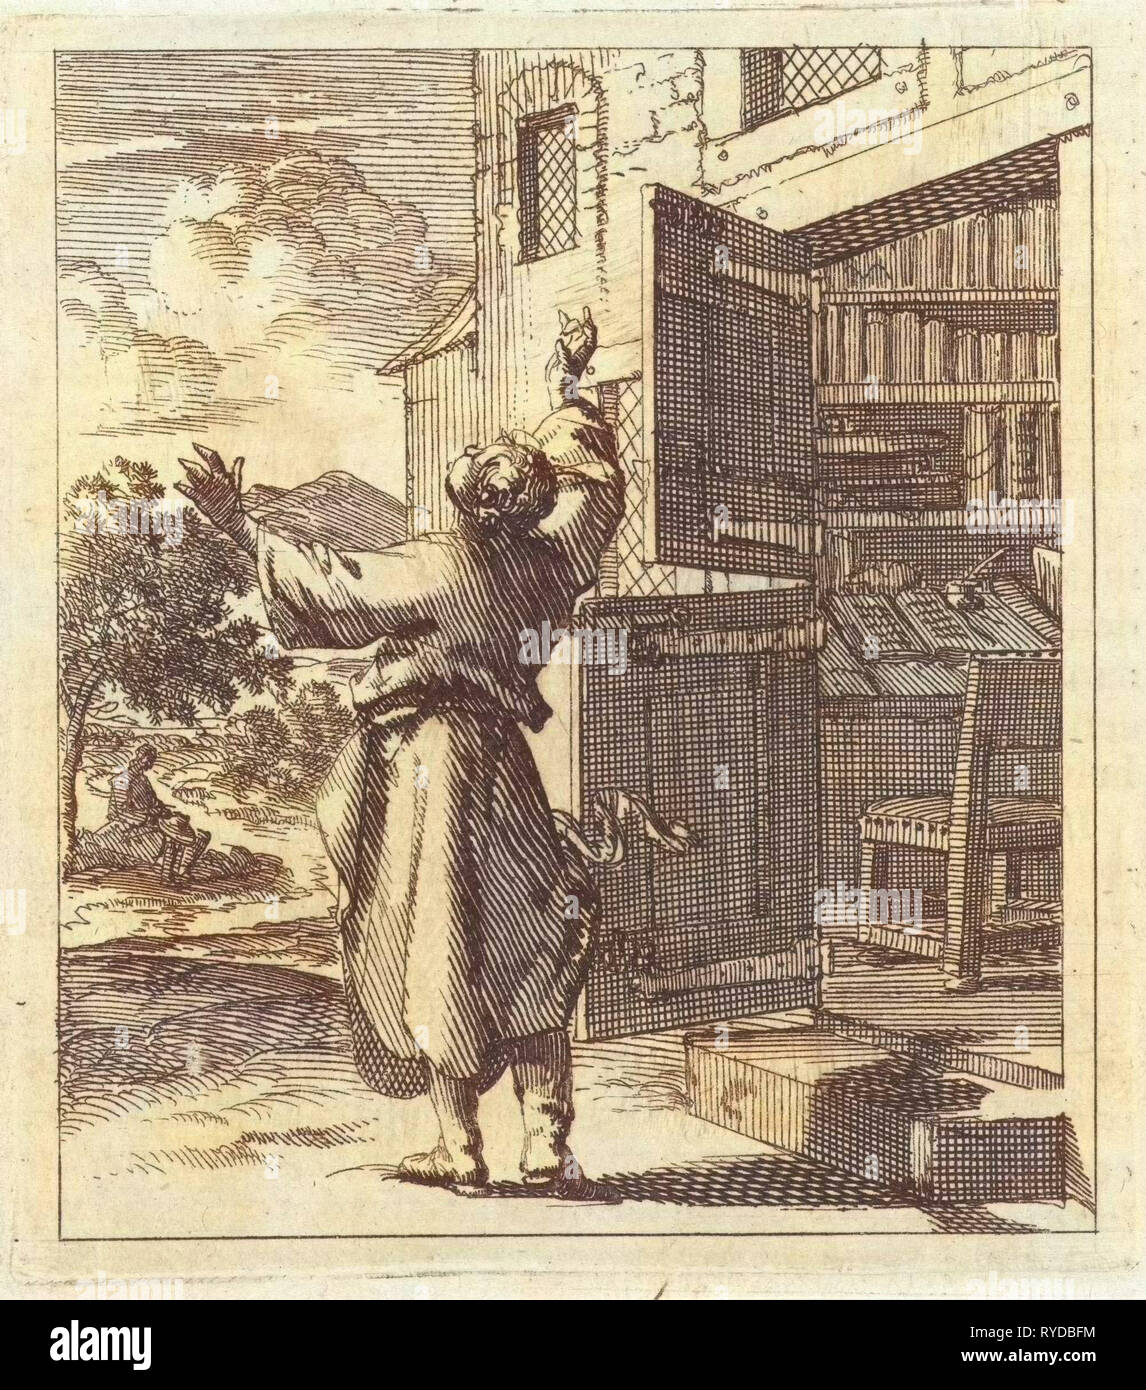 L'homme a quitté son étude pour voir au-delà des cieux, Jan Luyken, mer. Pieter Arentsz (II), 1689 Banque D'Images